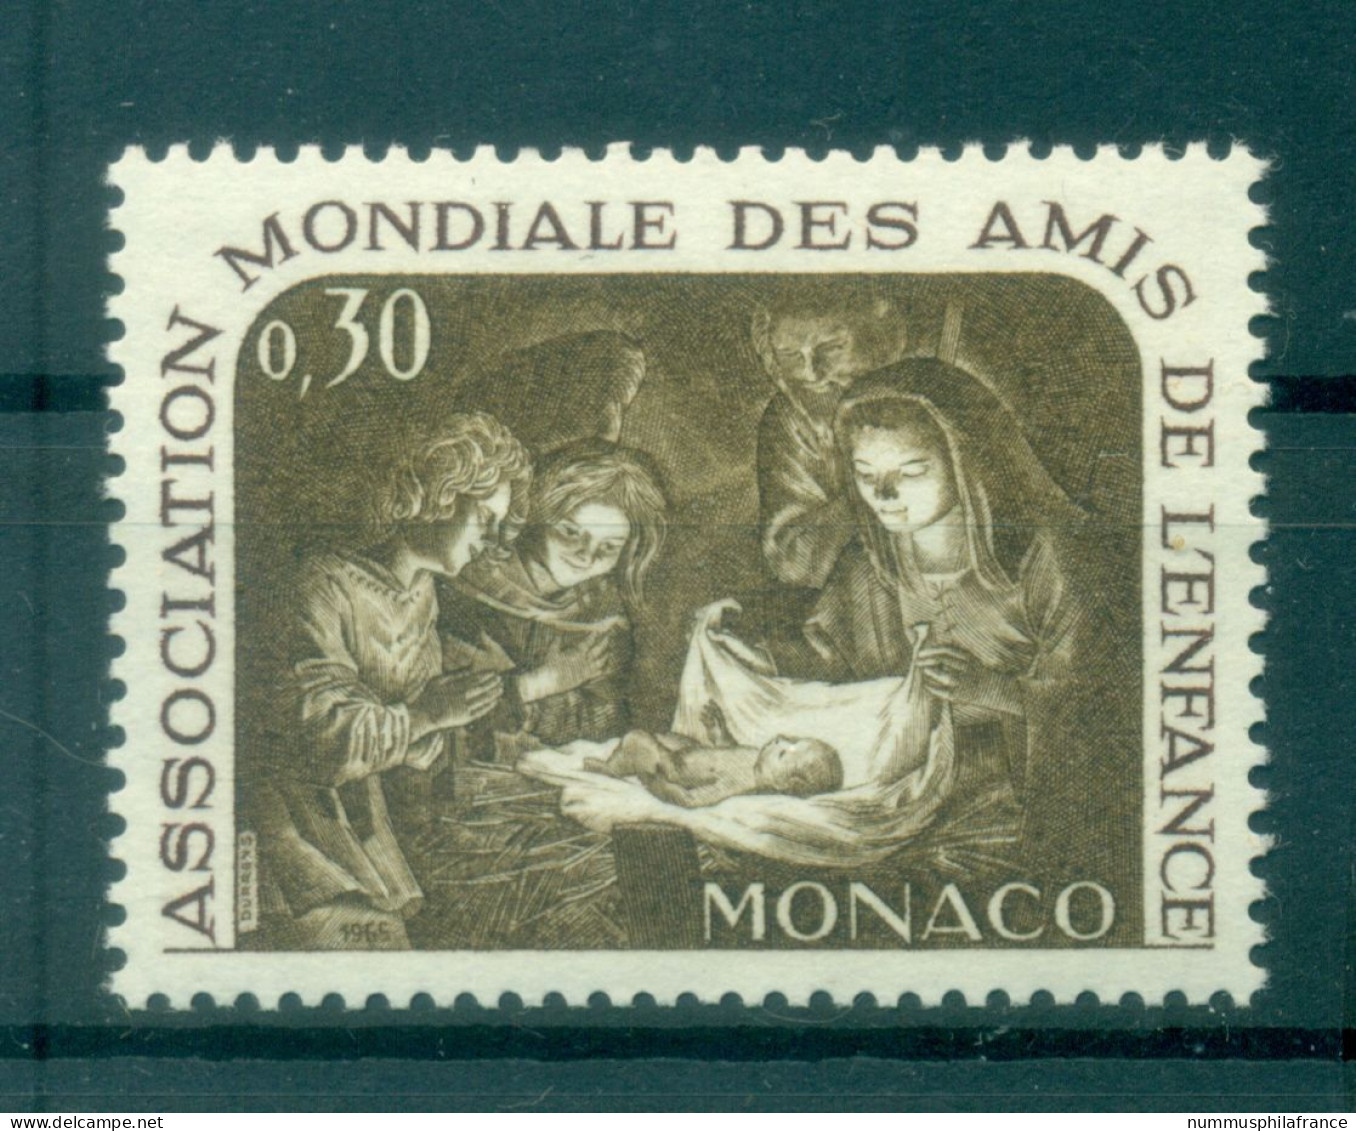 Monaco 1966 - Y & T  N. 688 - AMADE - Nuovi